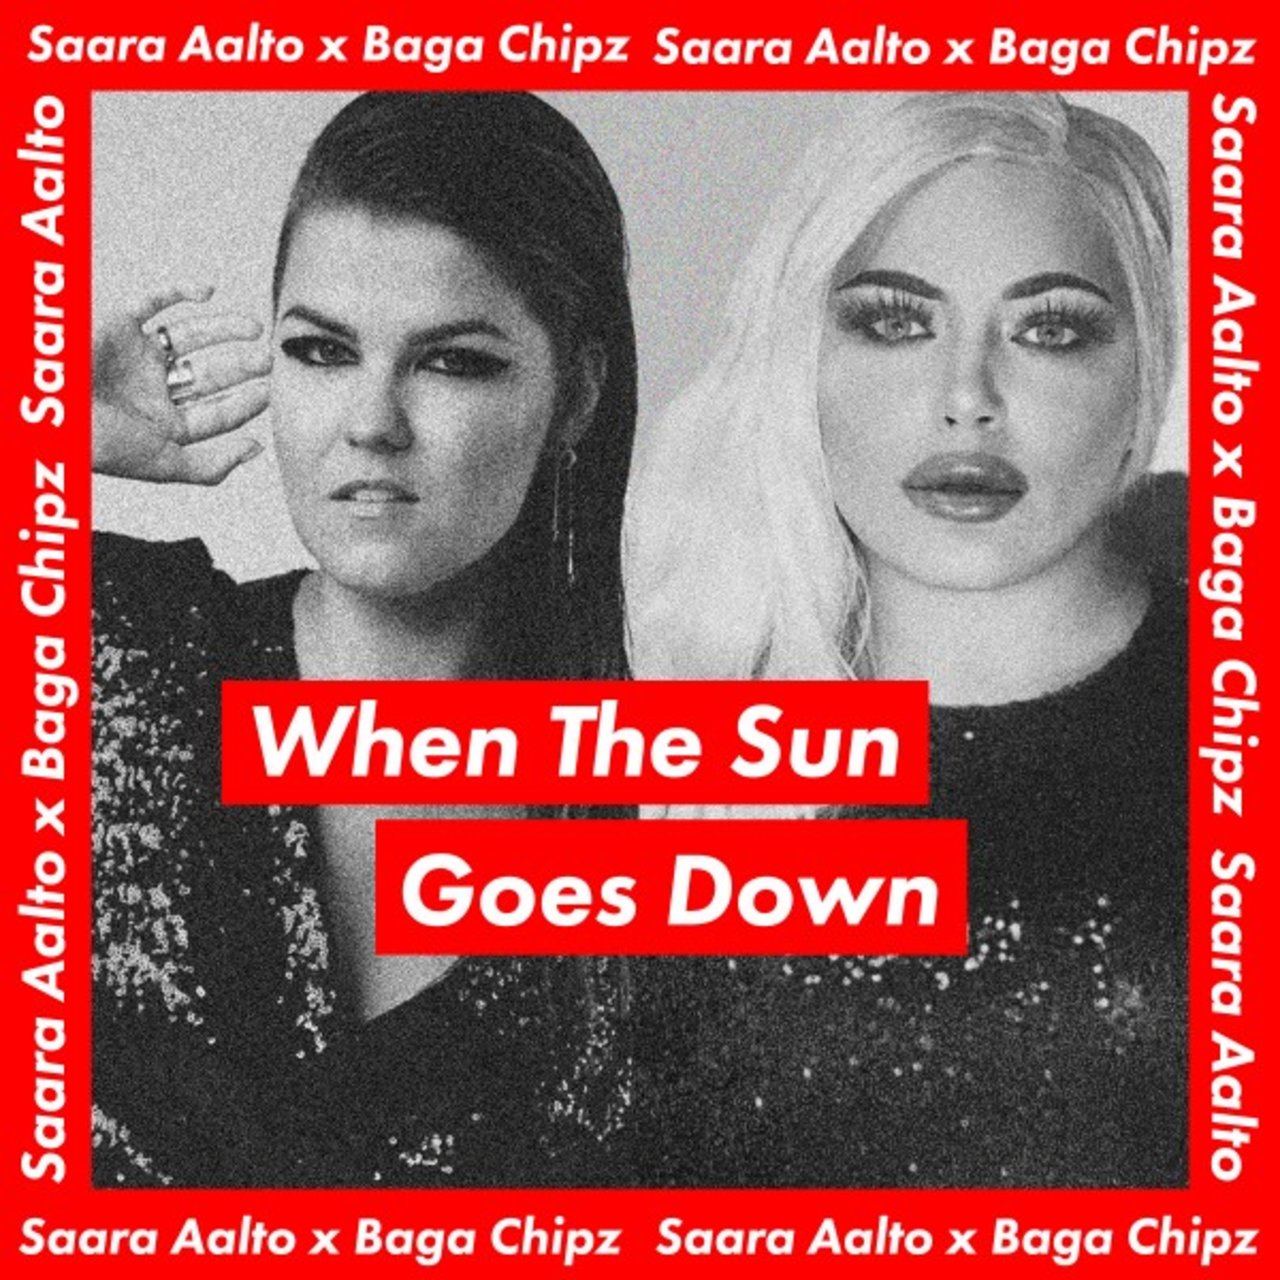 Saara Aalto & Baga Chipz — When the Sun Goes Down cover artwork